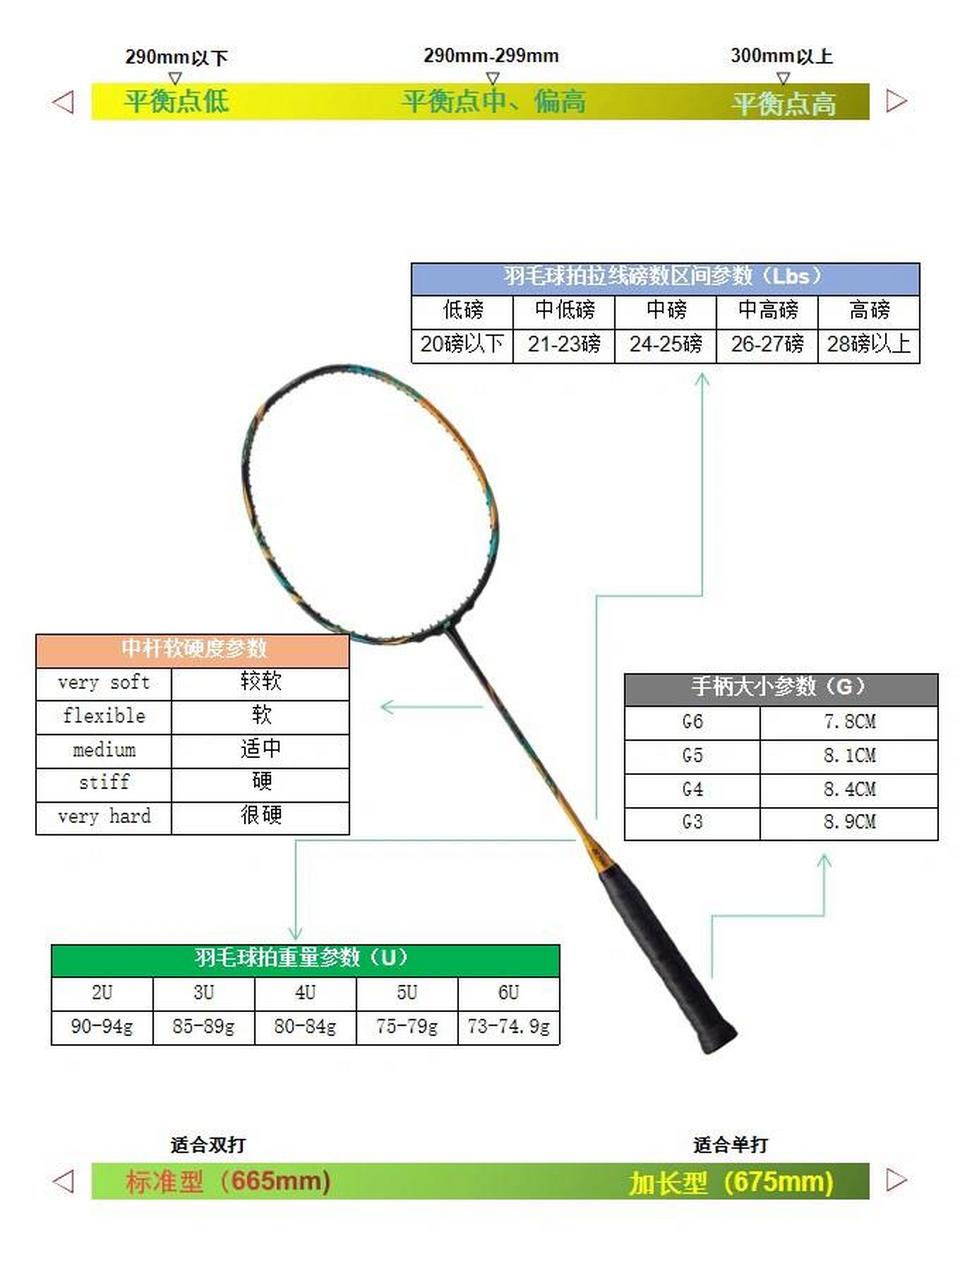 国内市场的羽毛球拍大多数为675mm